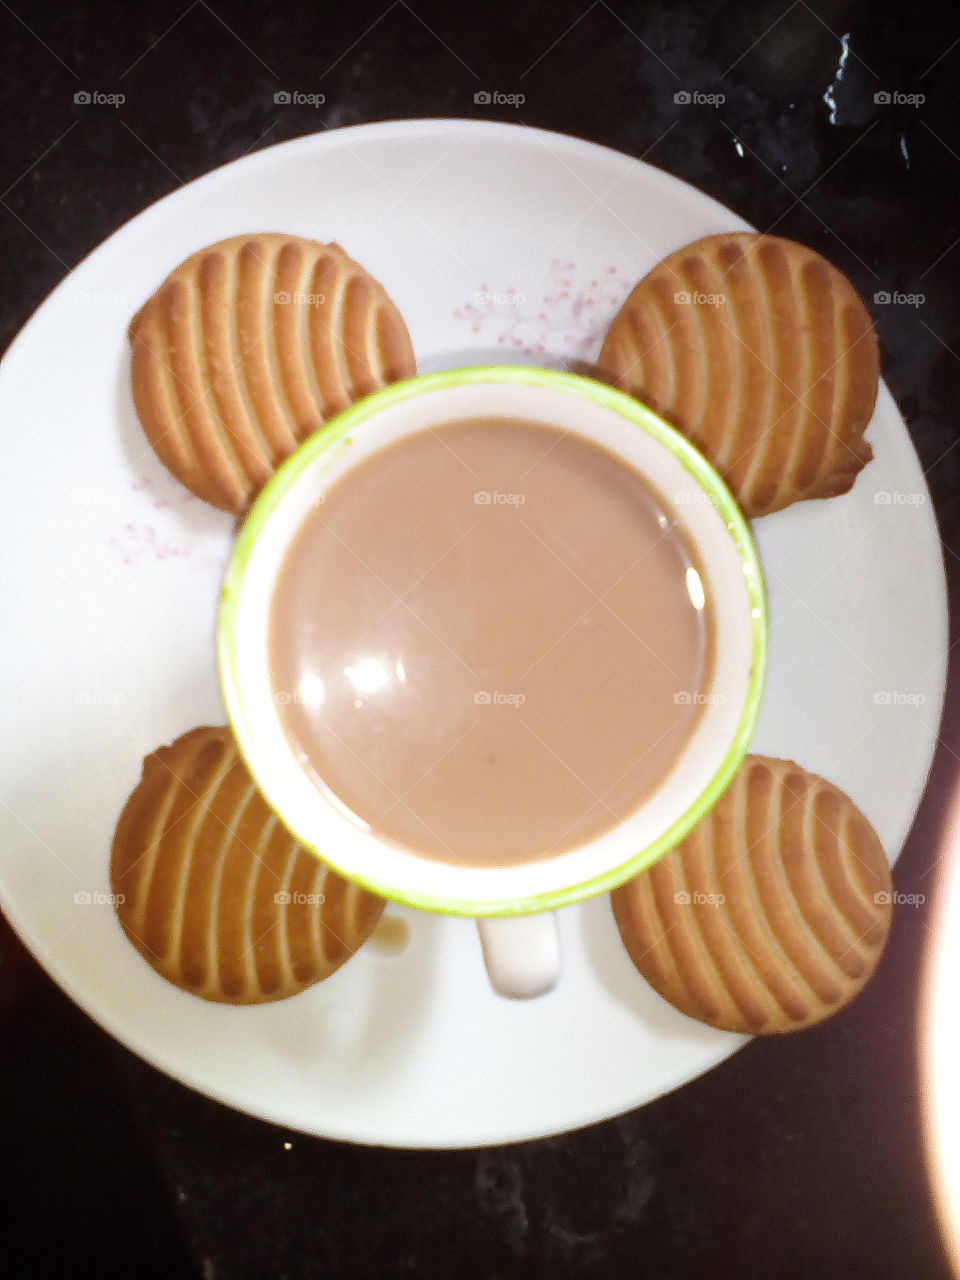 GOOD MORNING enjoying tea